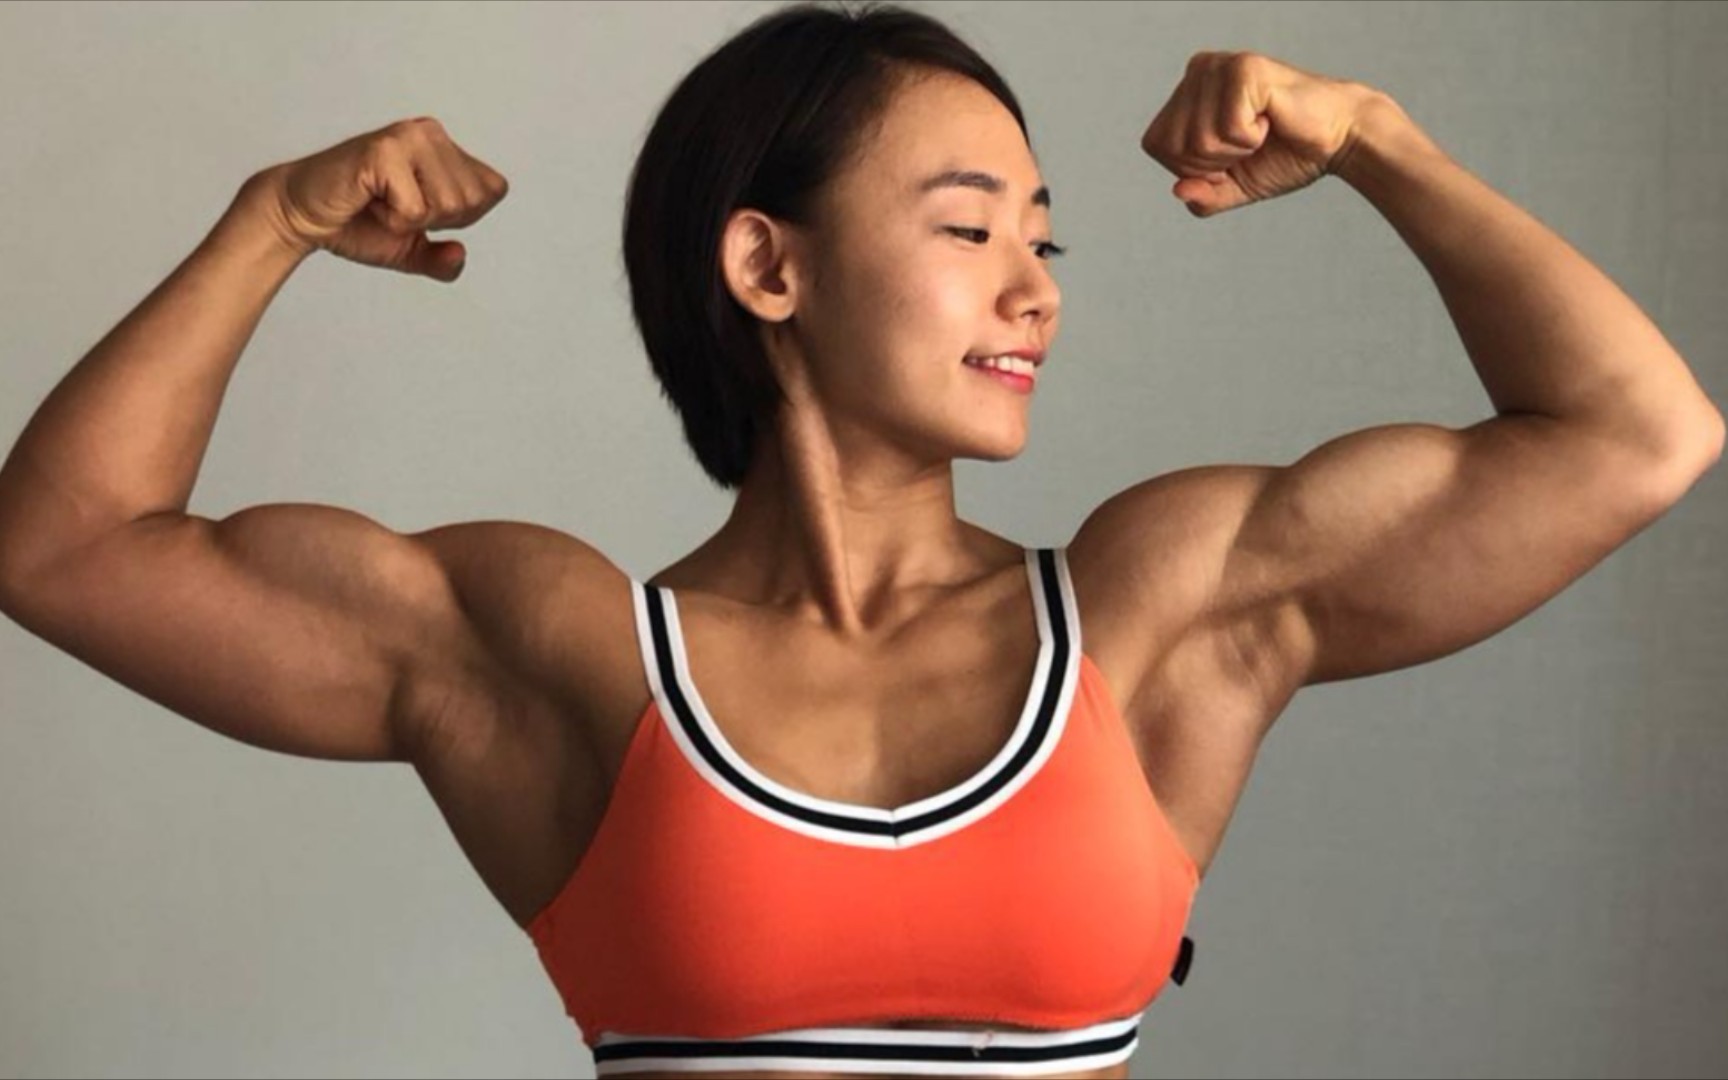 韩国女子健体运动员崔玉珍,金刚肌肉,芭比脸庞